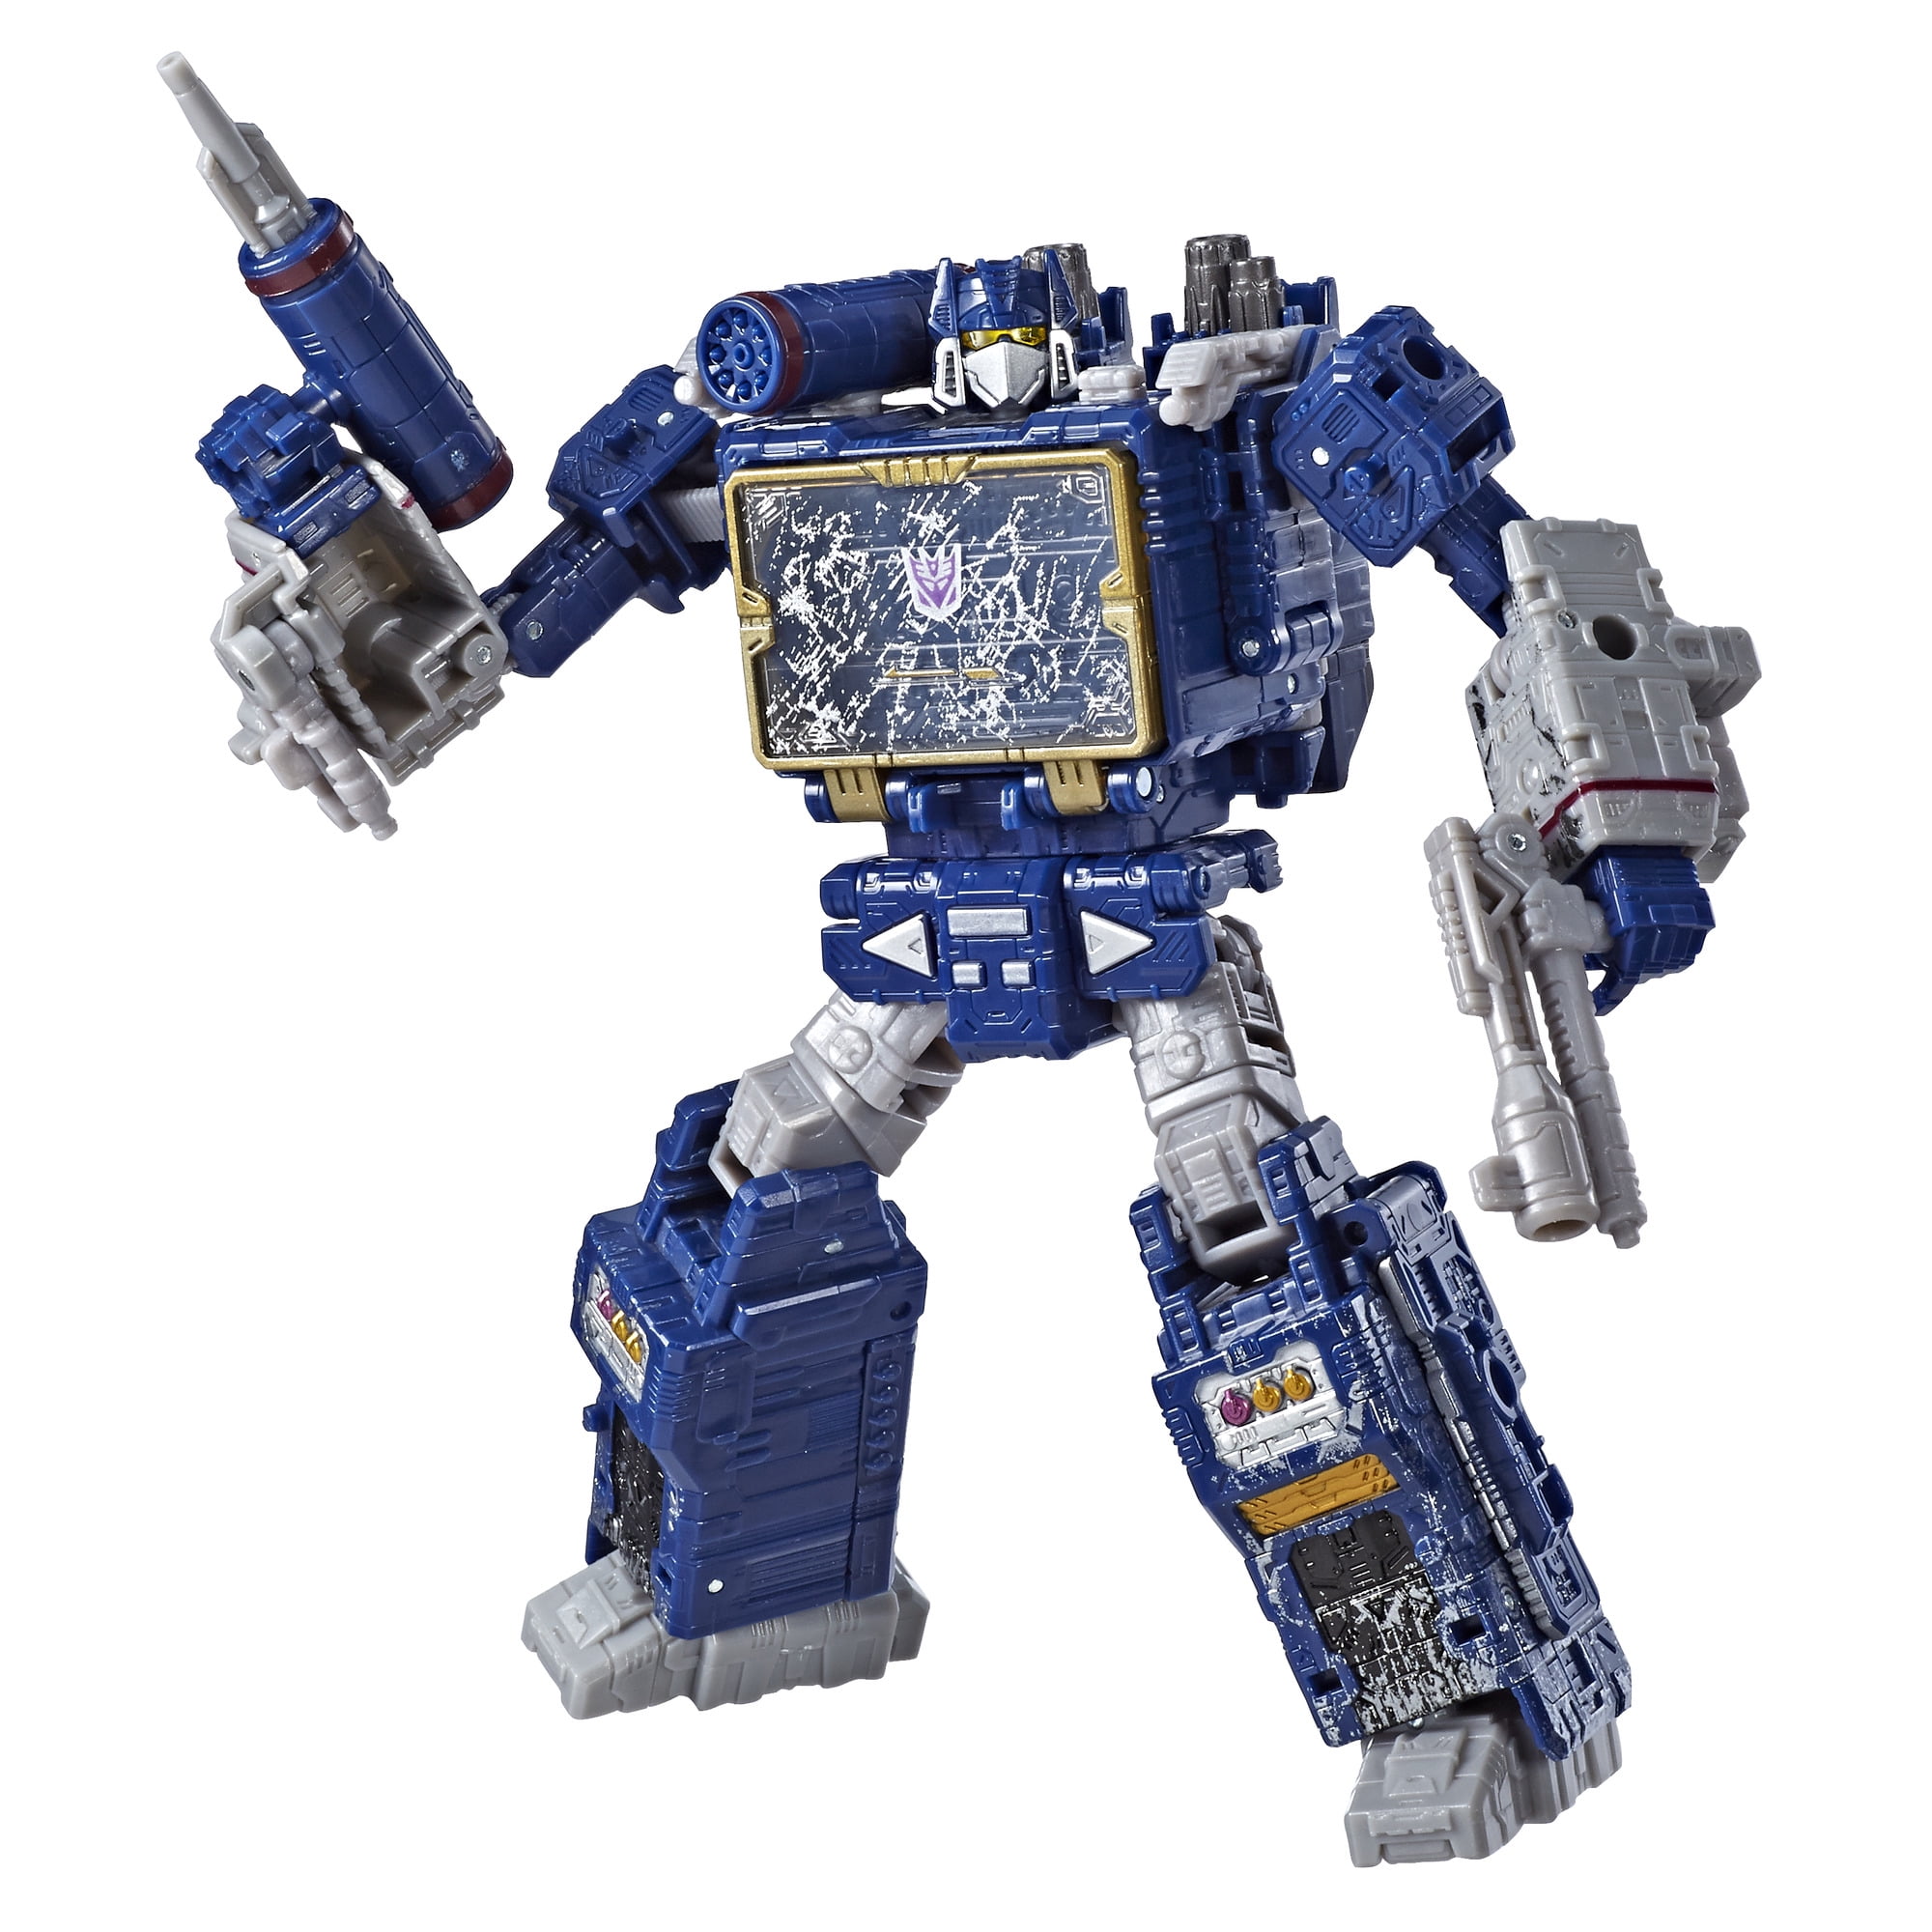 Details about   SOUNDWAVE Transformers Generations R.E.D Walmart Exclusive 